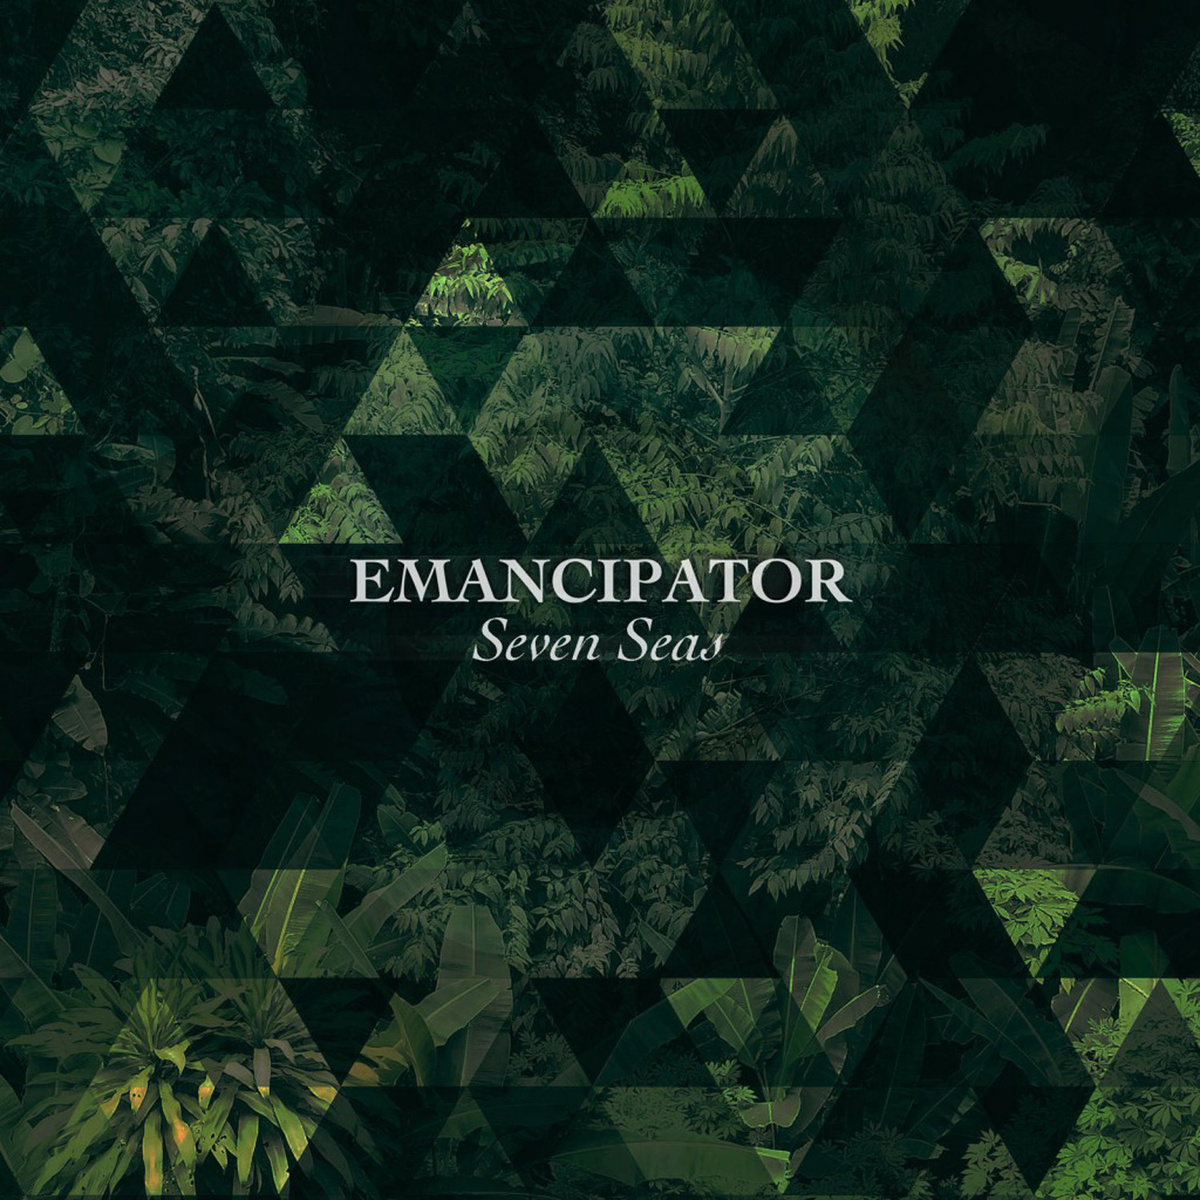 Emancipator, Seven Seas album cover.